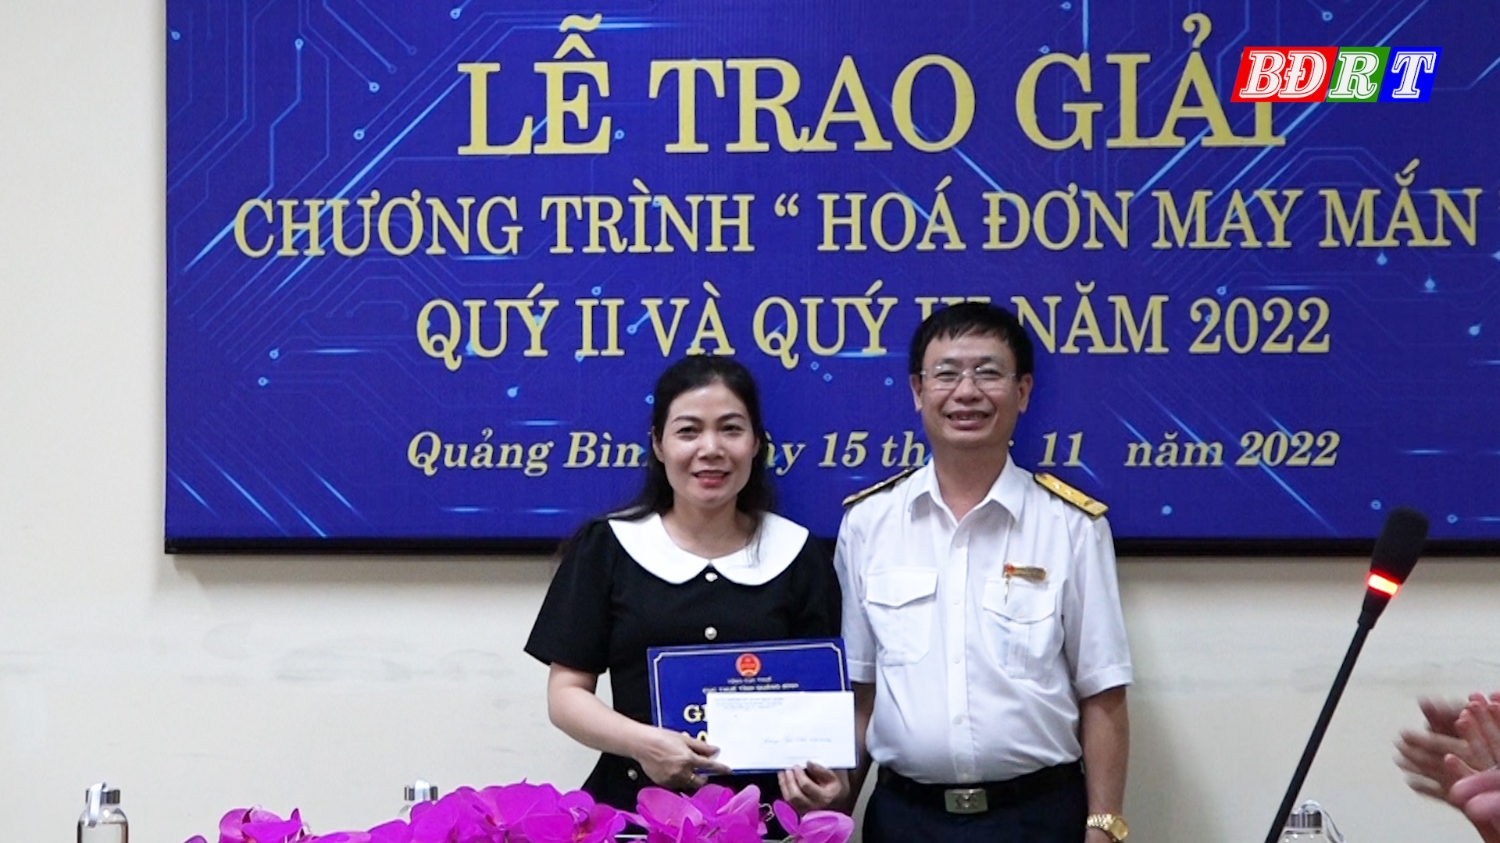 Cá nhân, hộ kinh doanh tại khu vực Quảng Trạch Ba Đồn trúng giải nhất “Hóa đơn may mắn” quý II và quý III năm 2022